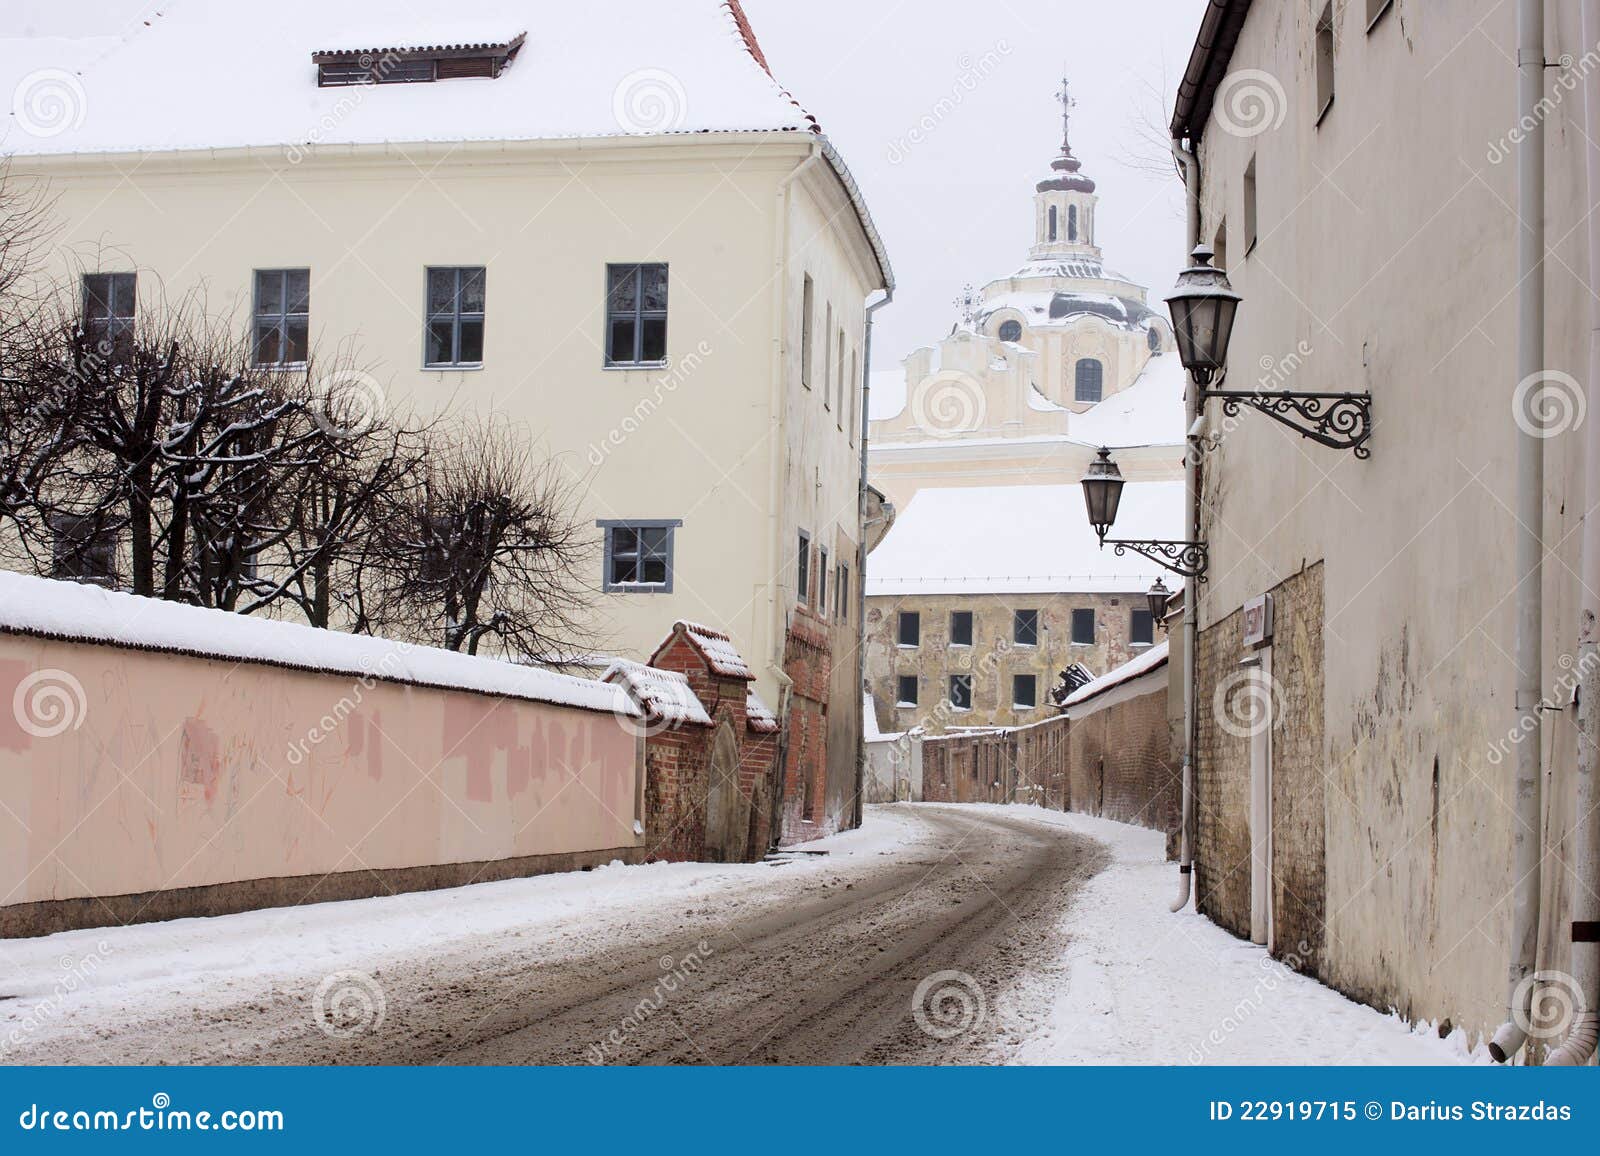 saint ignatius street in winter oldtown vilnius